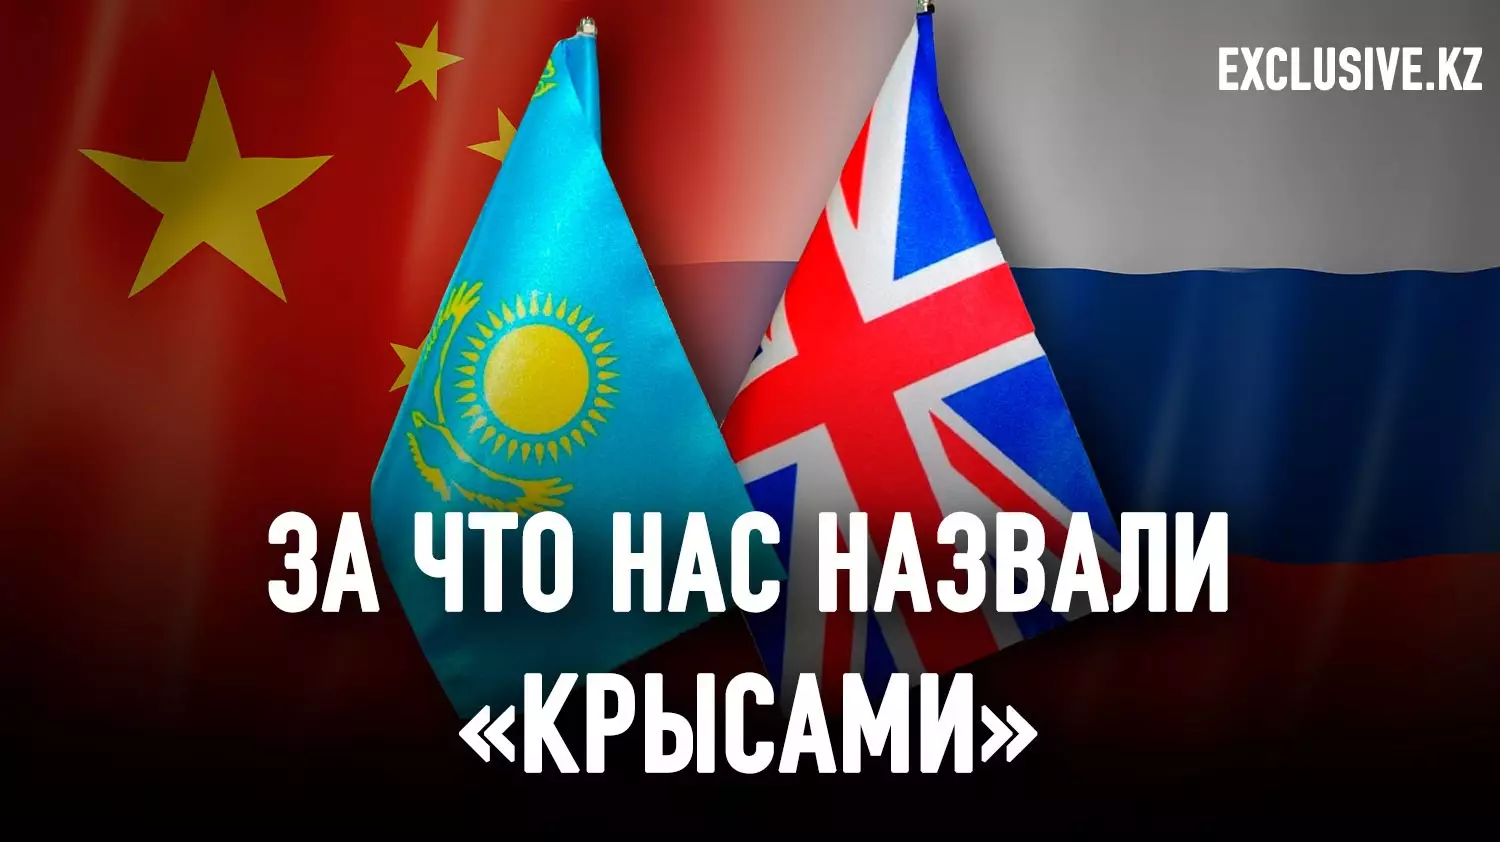 По оценкам китайцев, Казахстан может стать следующей Украиной